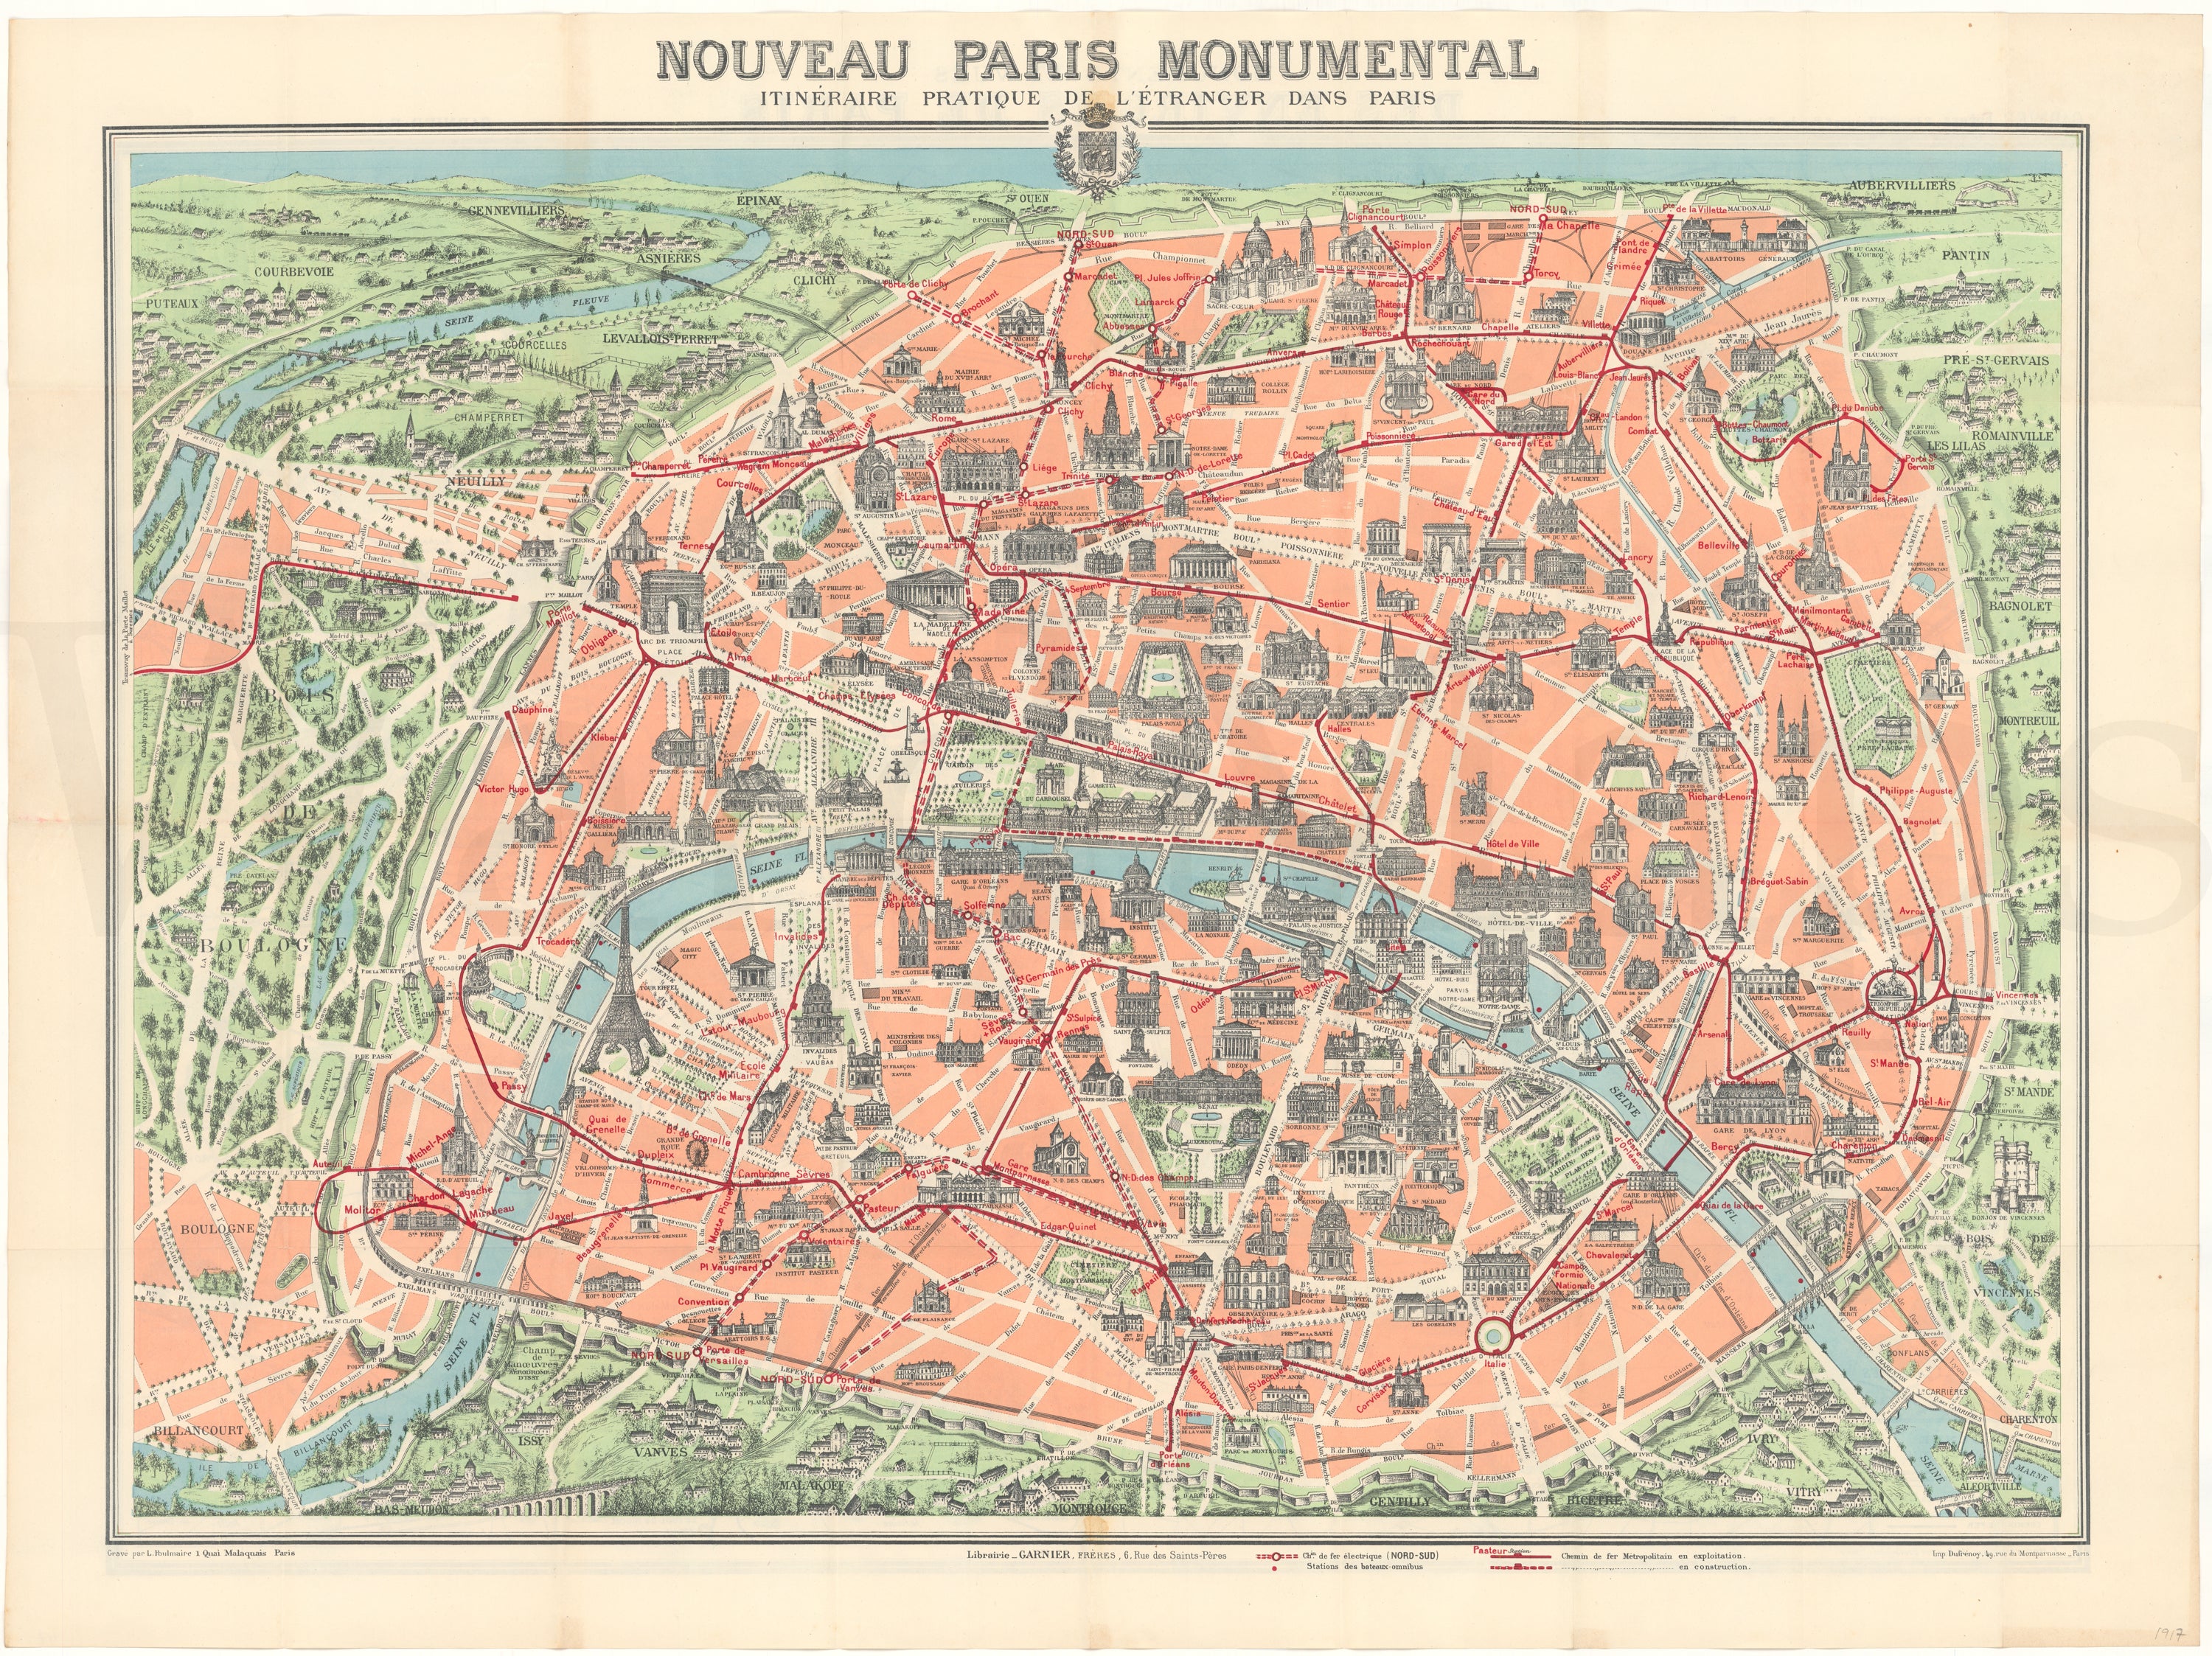 Paris, France 1917 "Nouveau Paris Monumental"